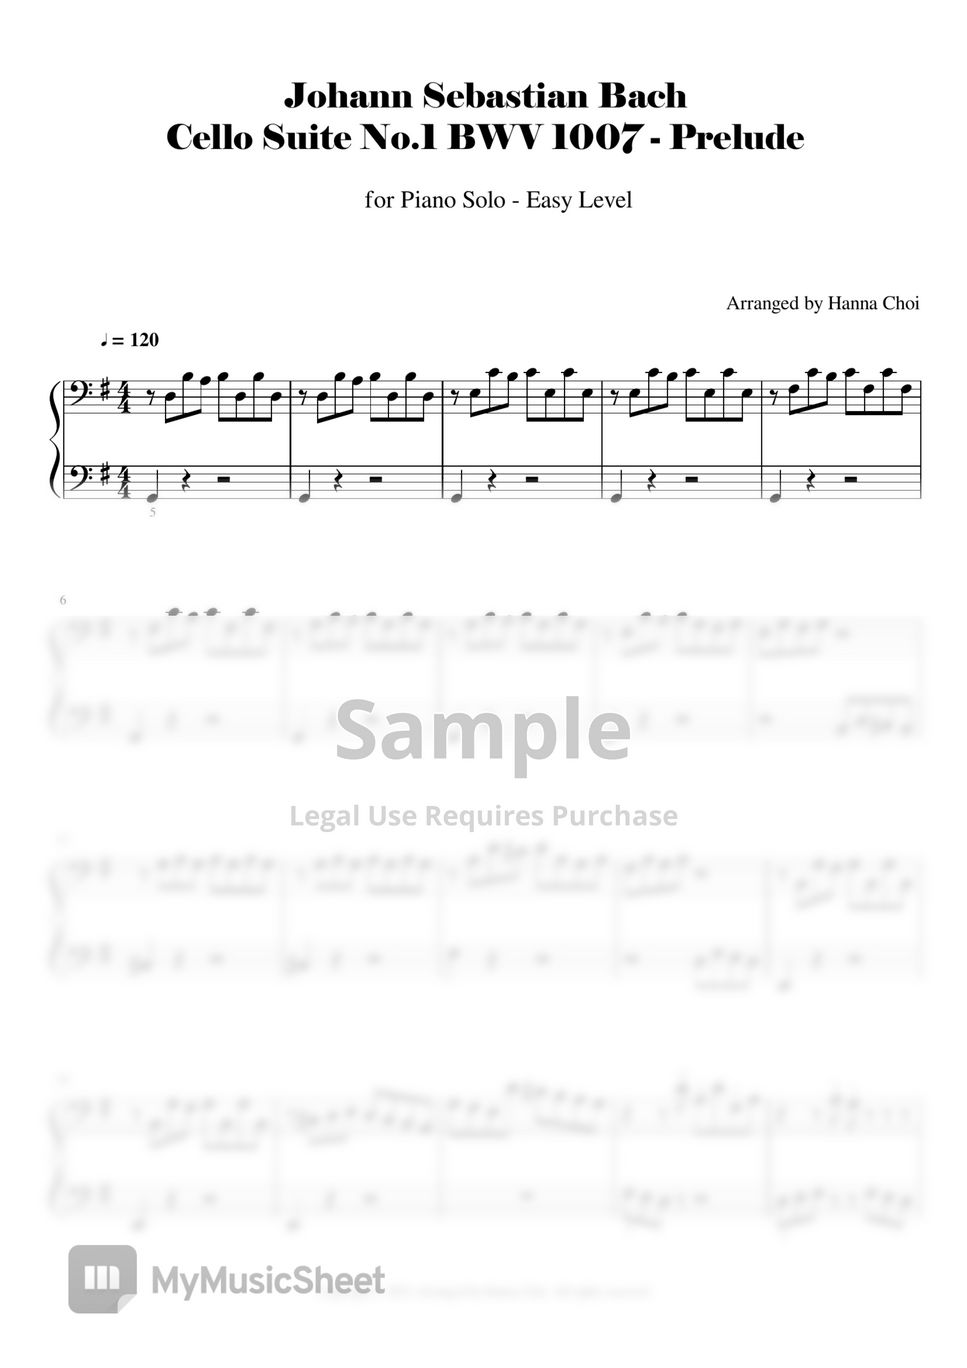 Bach - Cello Suite No.1 (무반주 첼로 모음곡 중 프렐류드) (for Piano Solo)